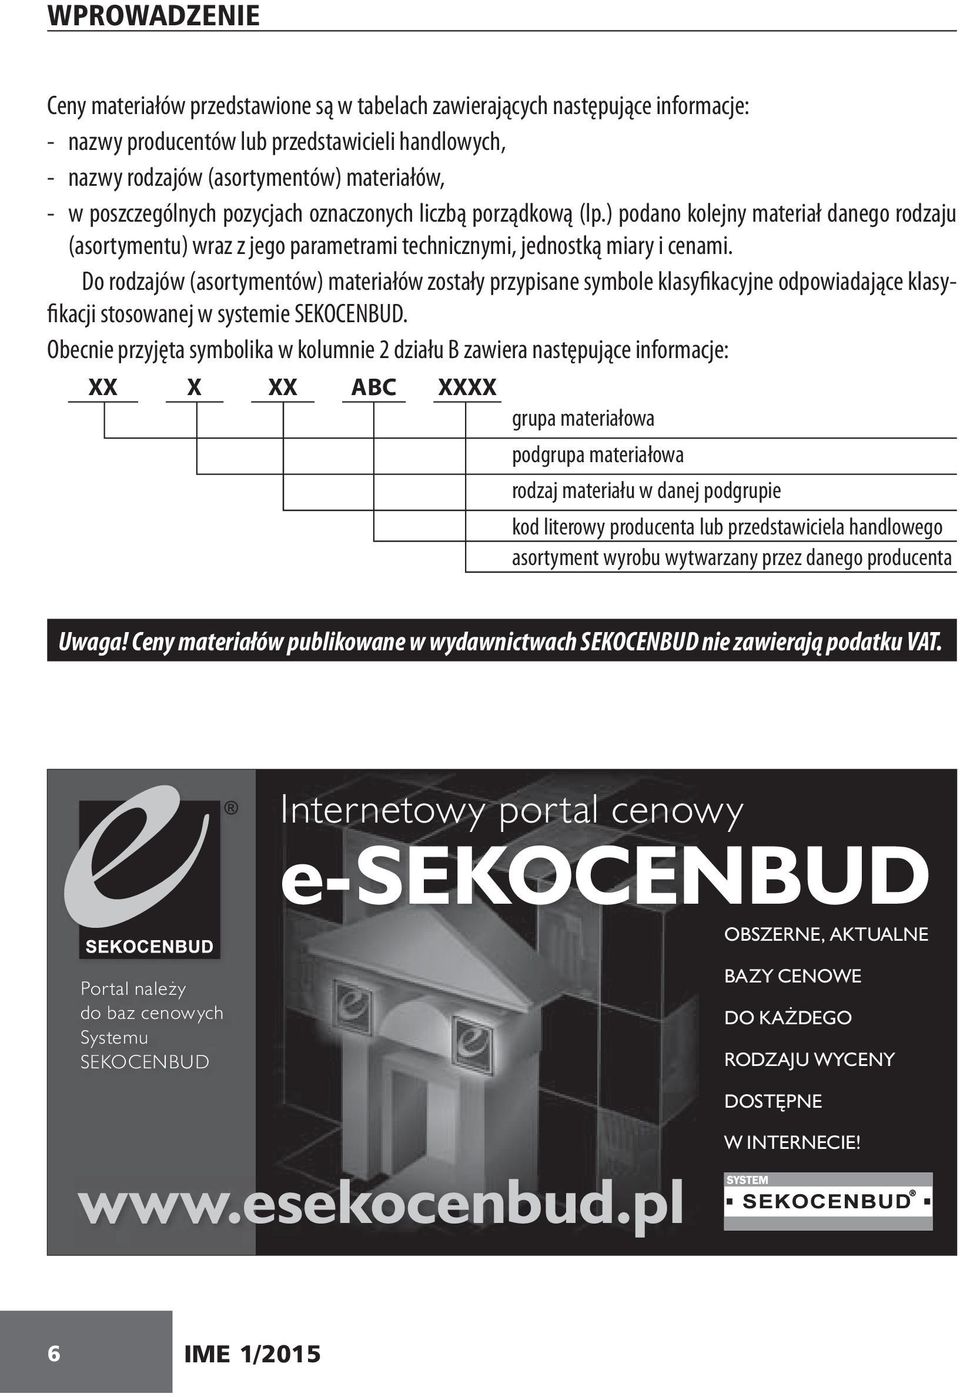 Do rodzajów (asortymentów) materiałów zostały przypisane symbole klasyfikacyjne odpowiadające klasyfikacji stosowanej w systemie SEKOCENBUD.